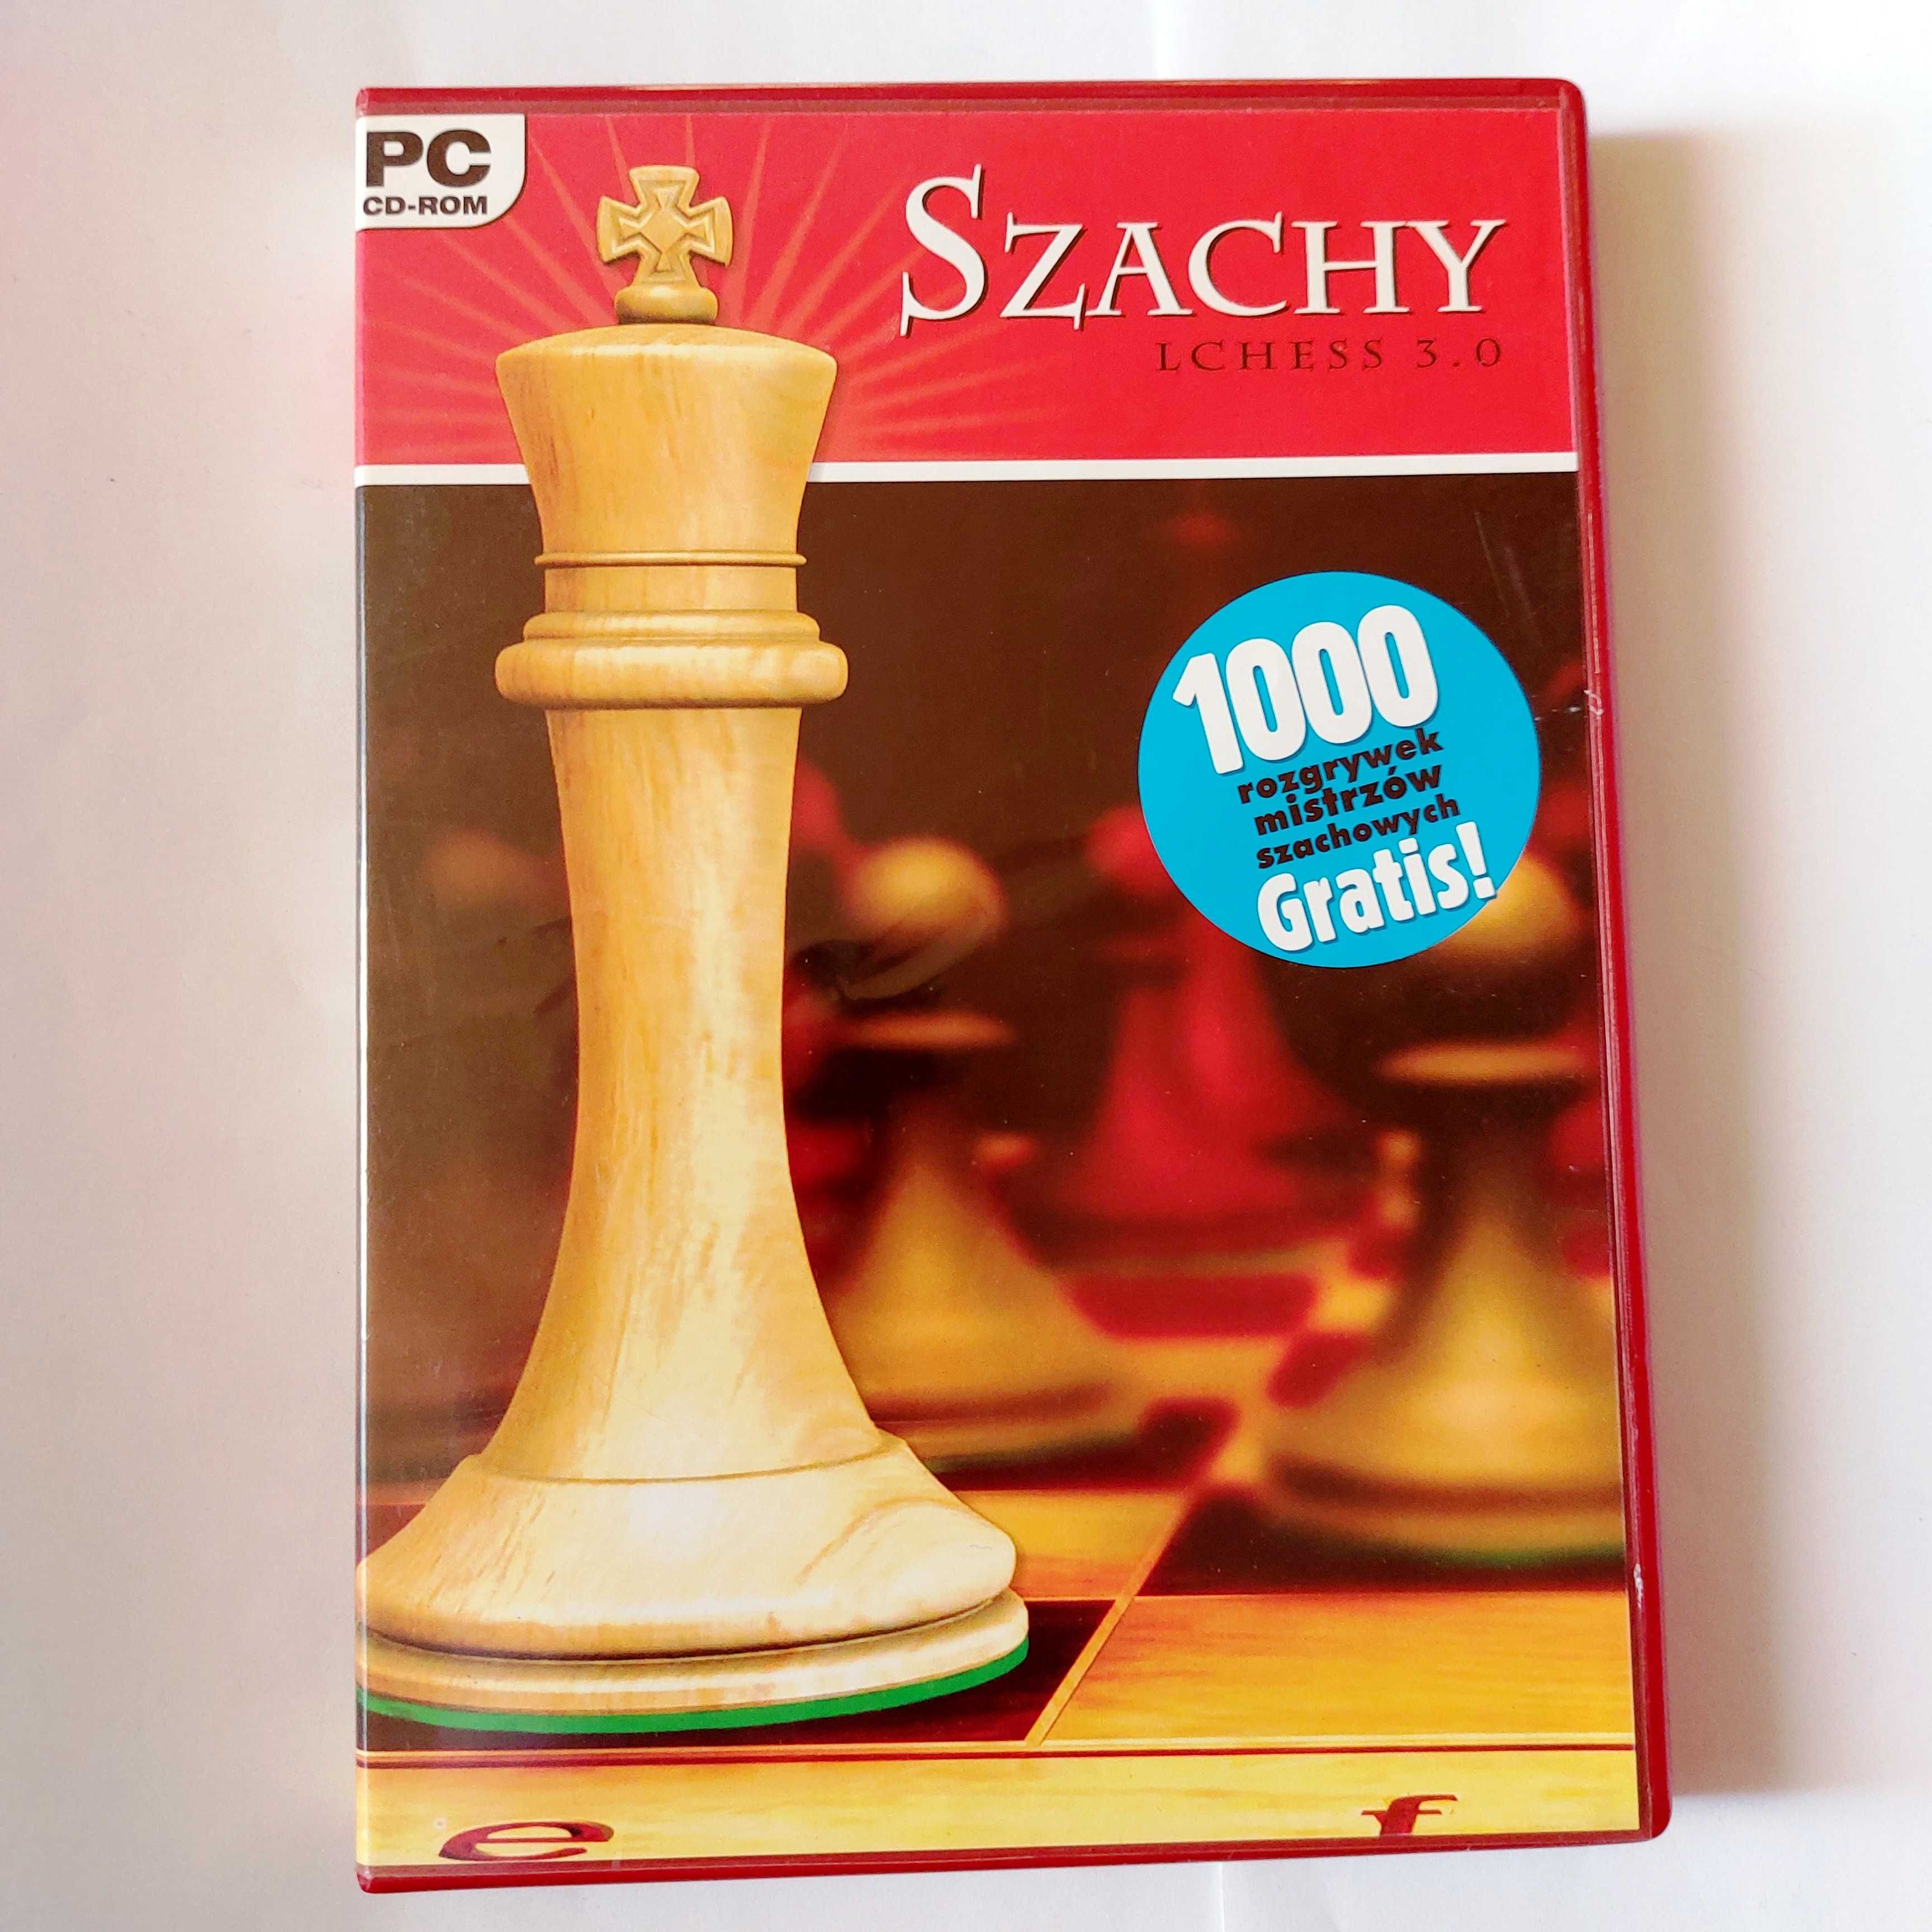 SZACHY LCHESS 3.0 | + 1000 rozgrywek mistrzów szachowych | gra na PC